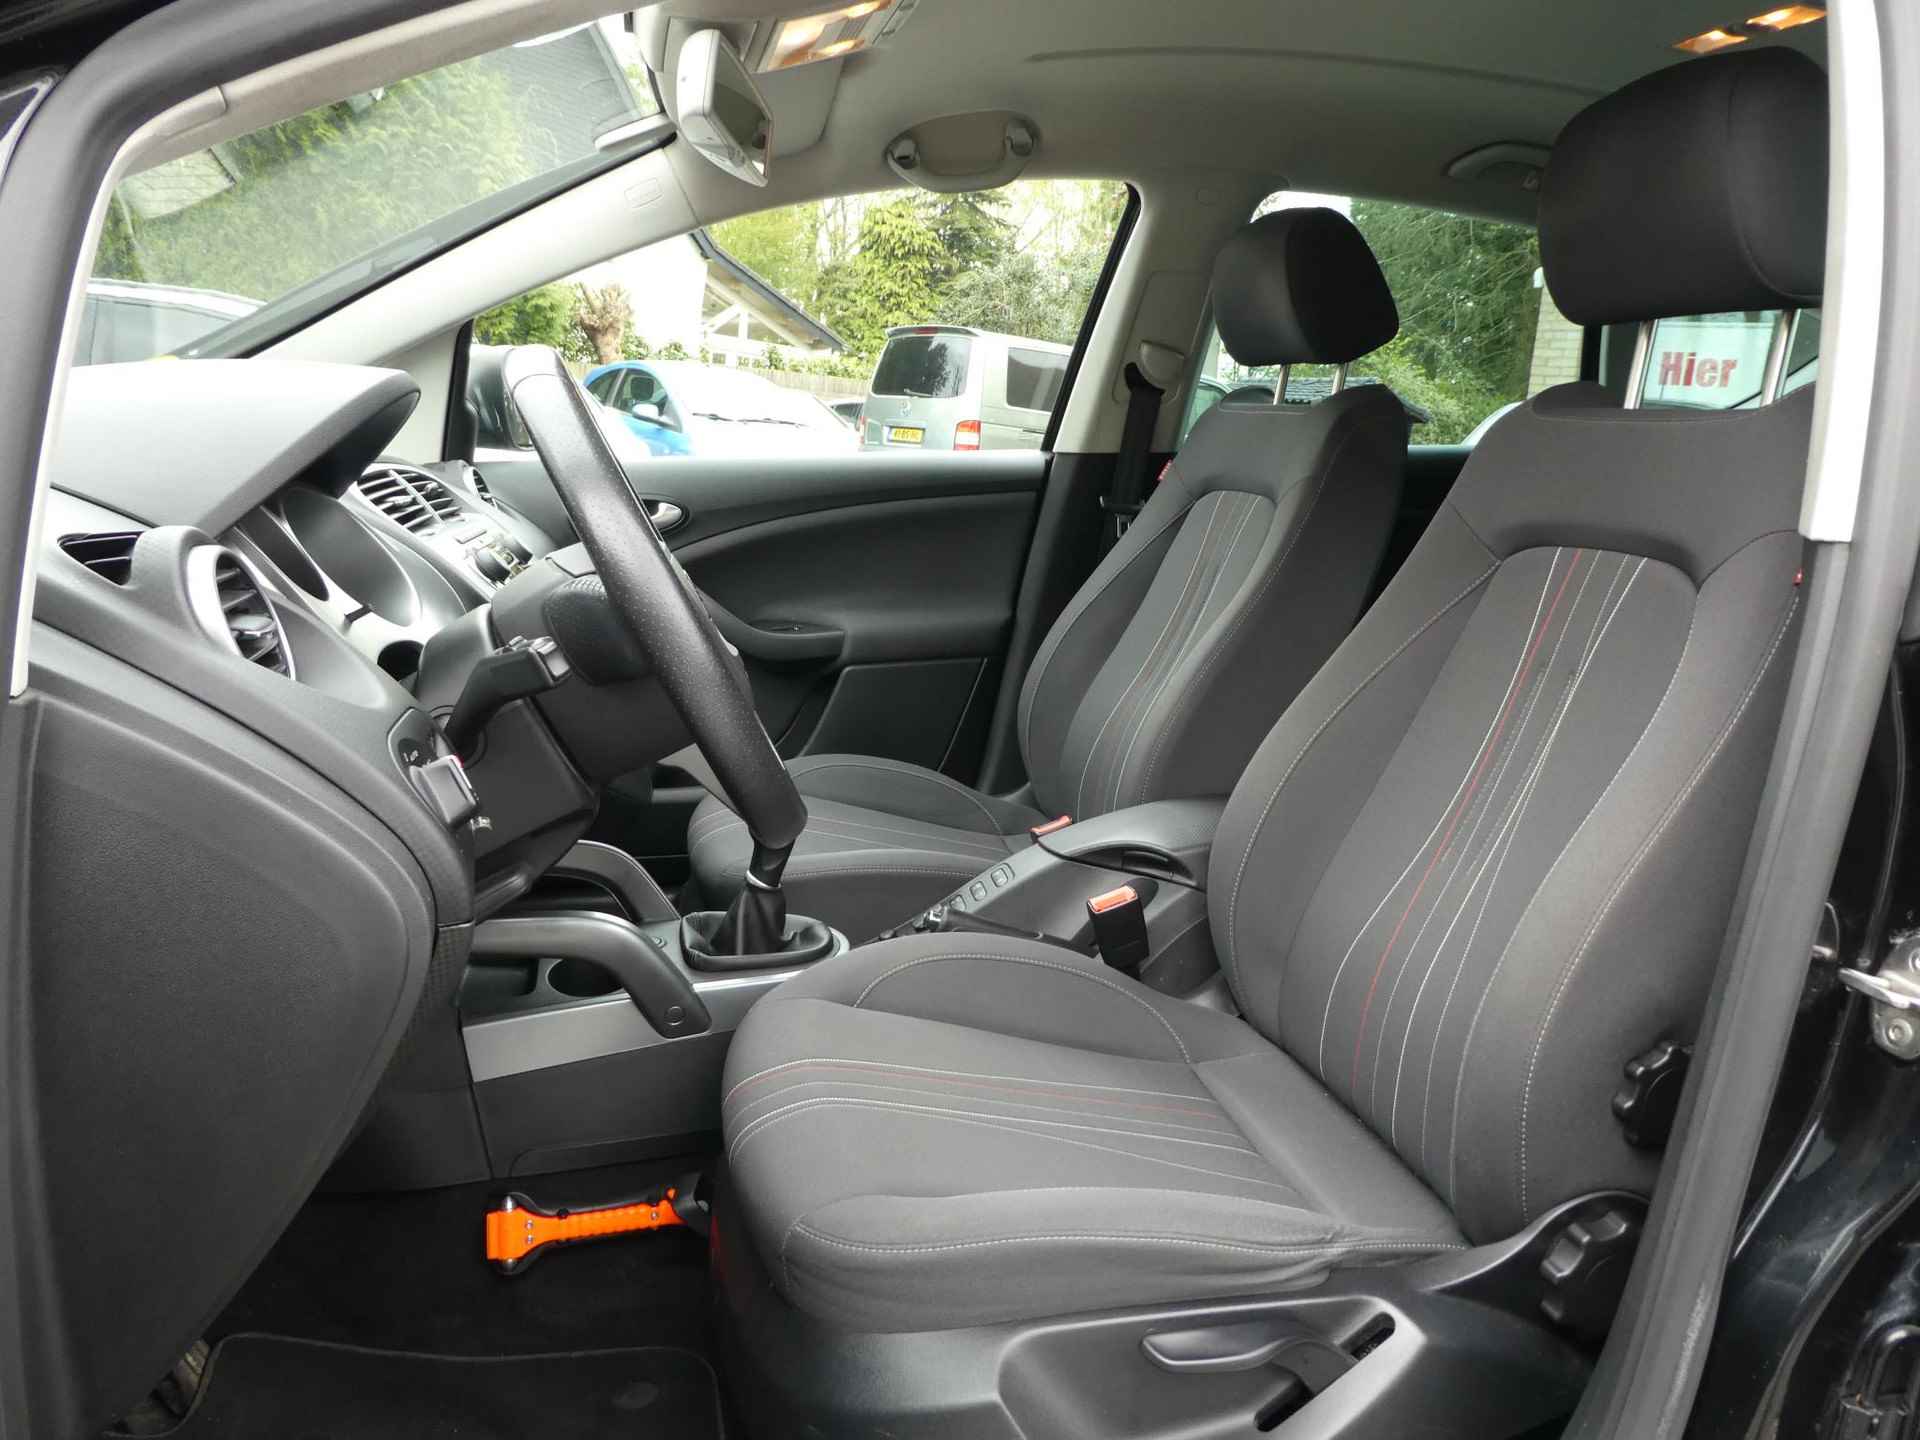 SEAT Altea XL 1.6 TDI Ecomotive Businessline COPA 2eEig|NweInjectoren|Navi|Trekhaak - 20/41